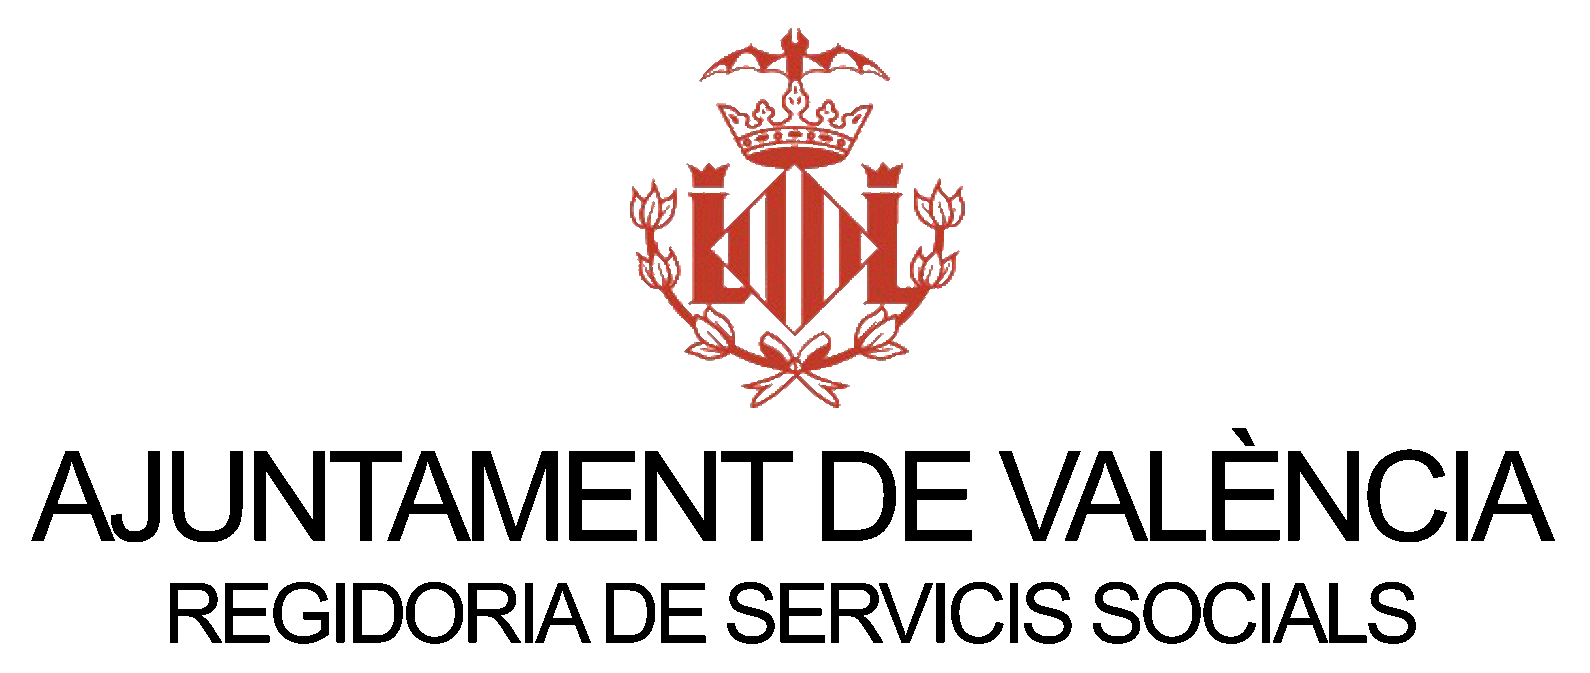 Logotipo Ayuntamiento de Valencia